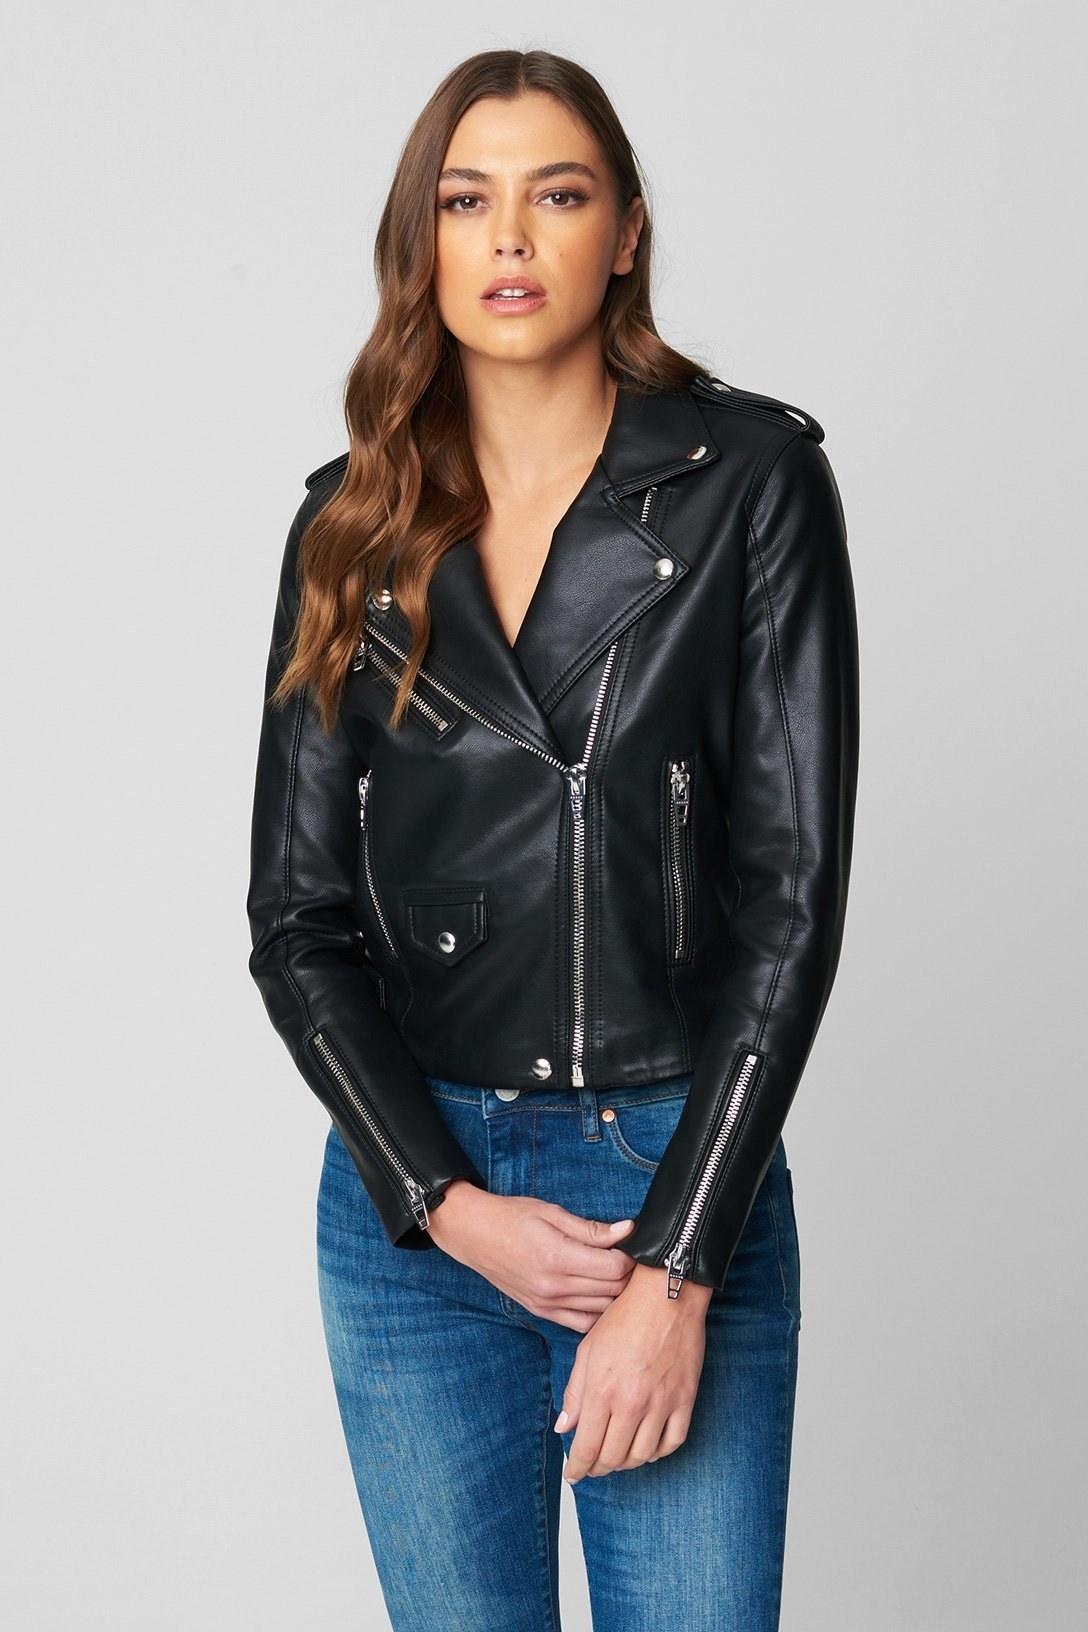 model wearing the black jacket